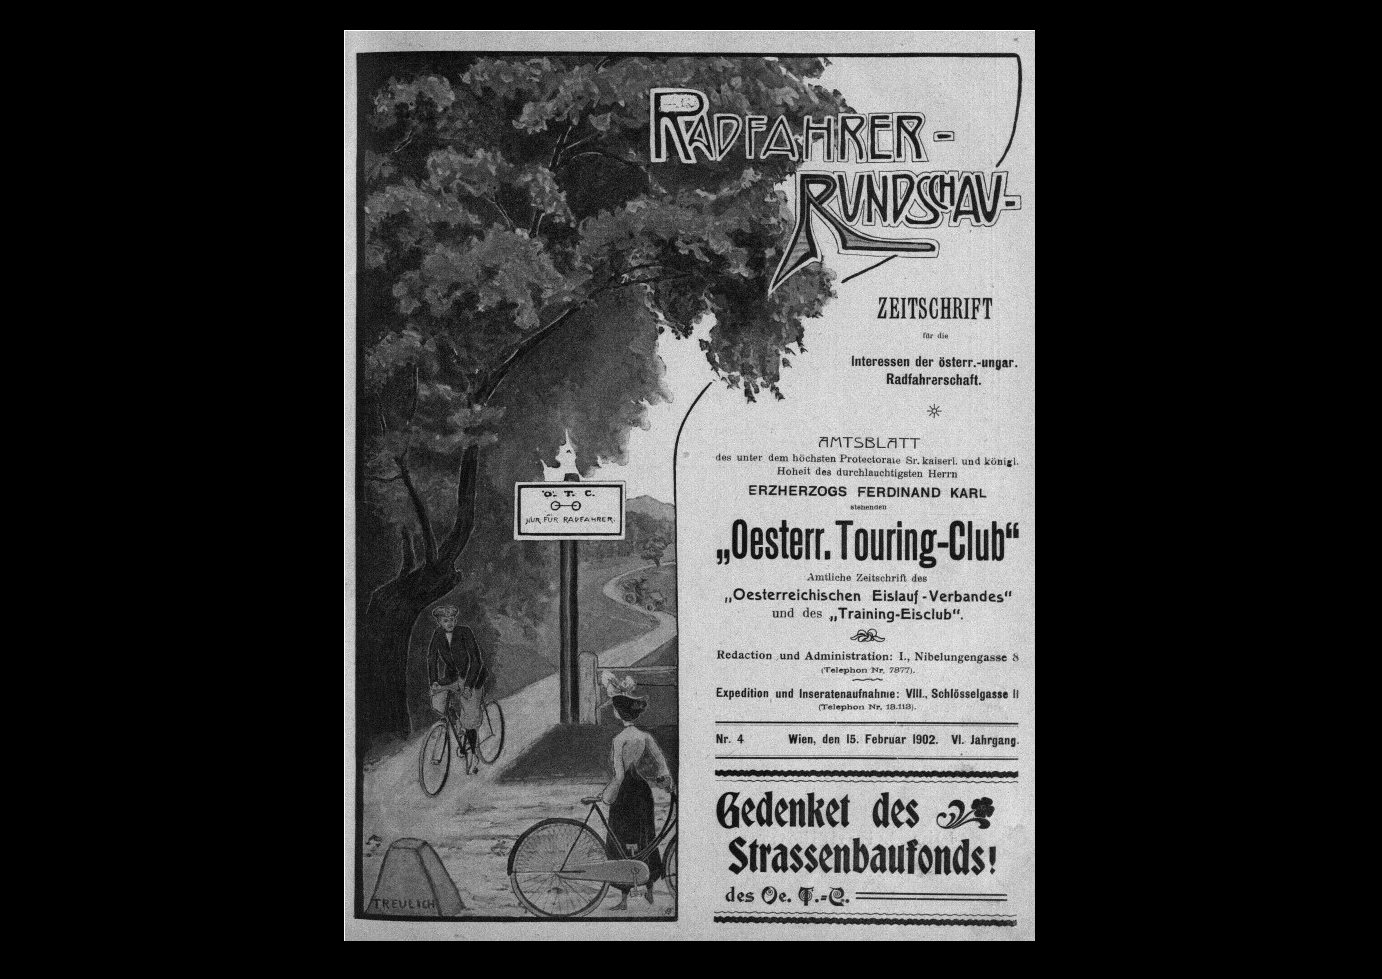 Ilustrace na titulní straně dobového periodika cykloturistického klubu ÖTC znázorňuje značení klubem zbudované cyklostezky nadepsané „Ö.T.C. nur für Radfahrer“. Nevíme, zda se dané značení skutečně používalo, ani zda bylo součástí cyklostezky Hamr–Lučina. Každopádně cyklistické kluby do značení silnic na přelomu 19. a 20. století aktivně investovaly. Zdroj: Club-Organ des Österreichischen Touring-Club 6:4 (1902).